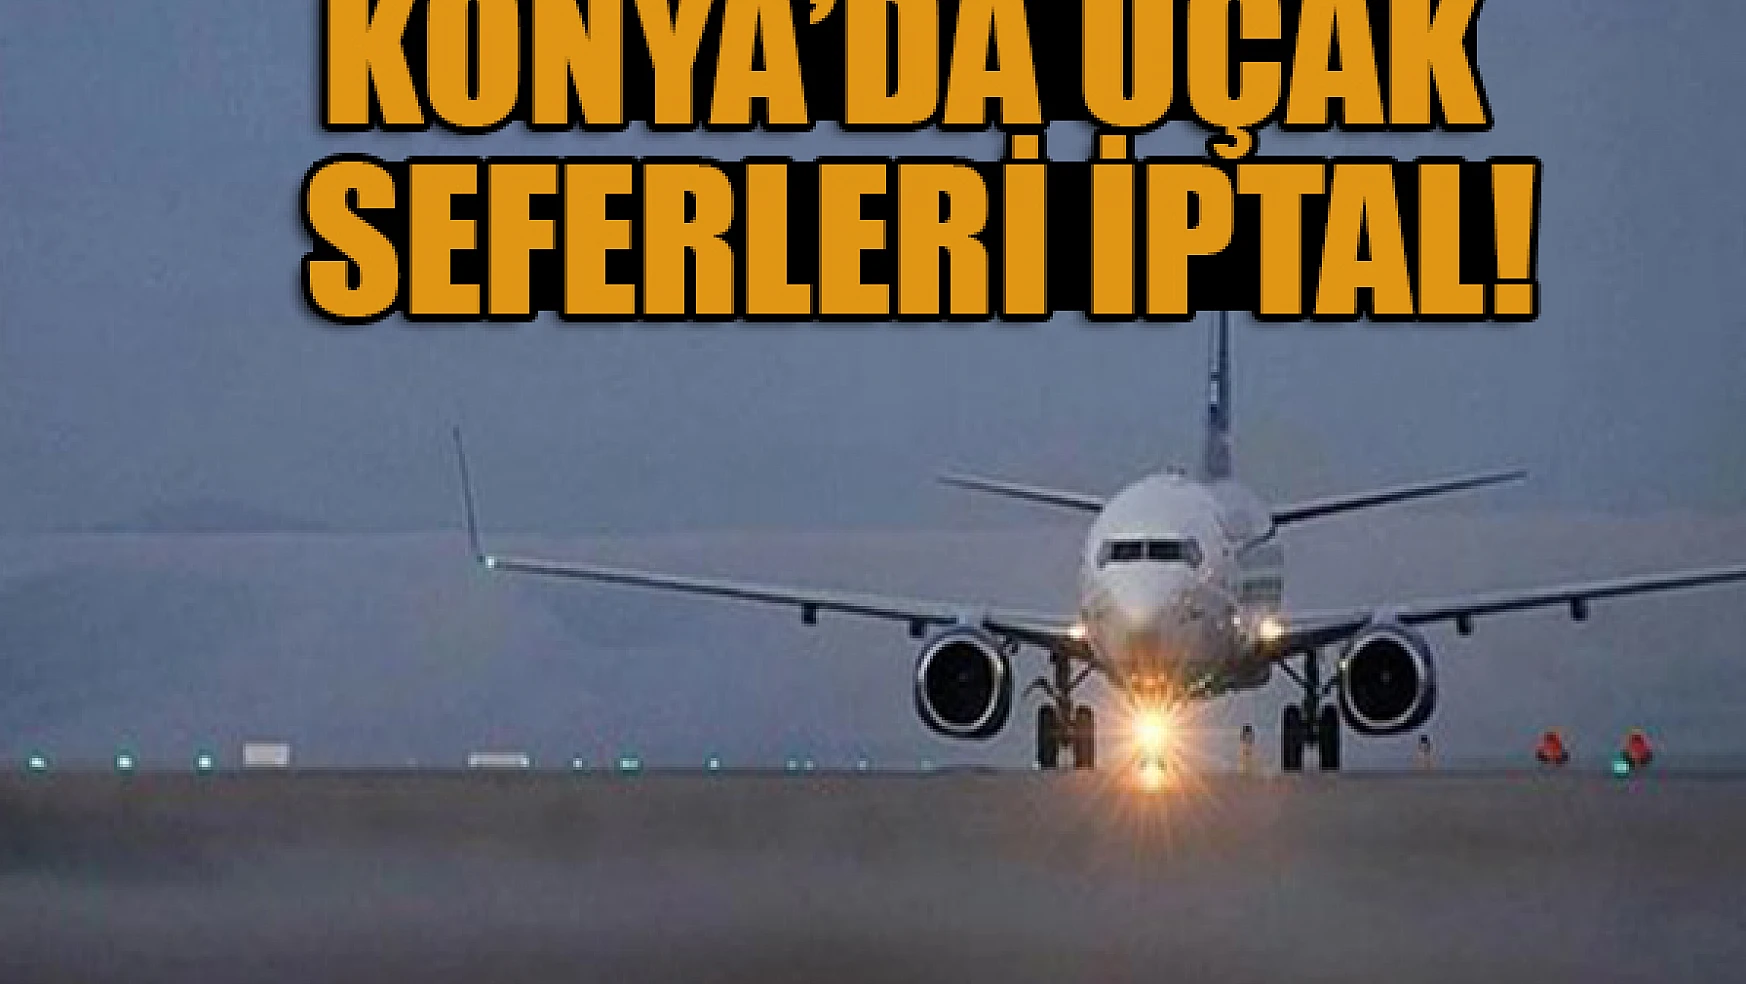 Konya'da uçak seferleri İptal edildi!